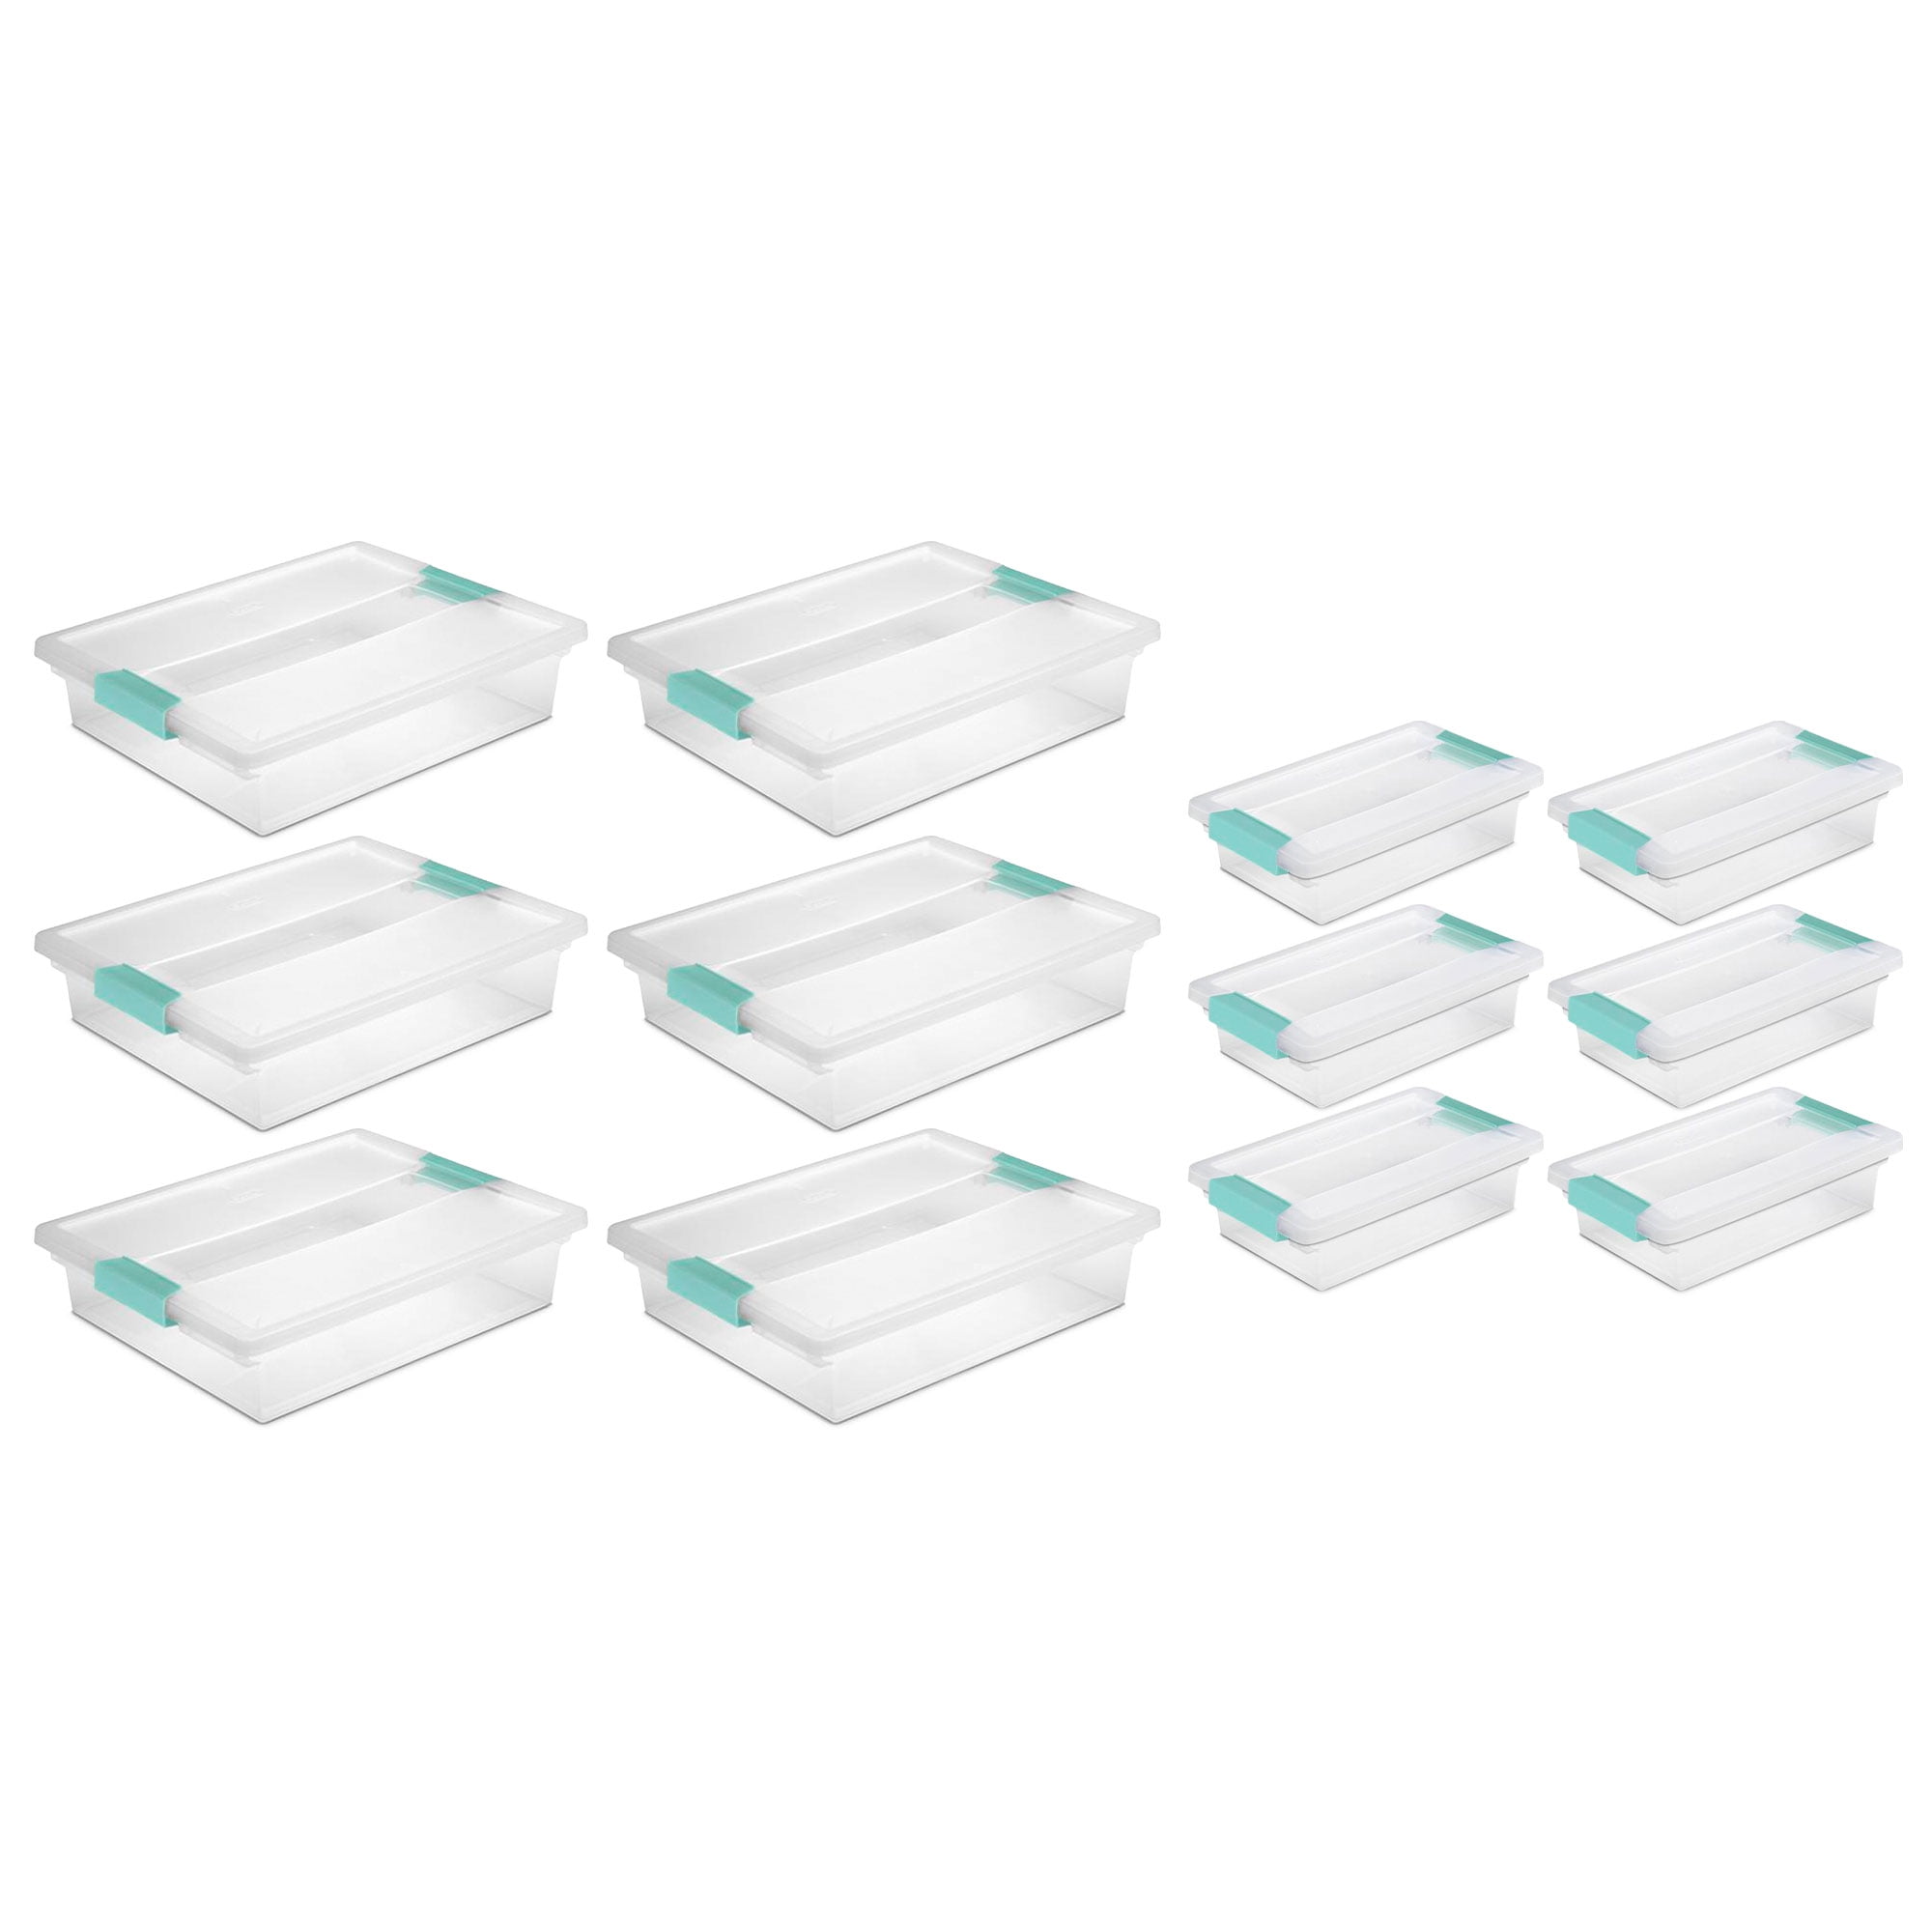 Sterilite 3 qt. Plastic Small File Clip Box Storage Tote Container